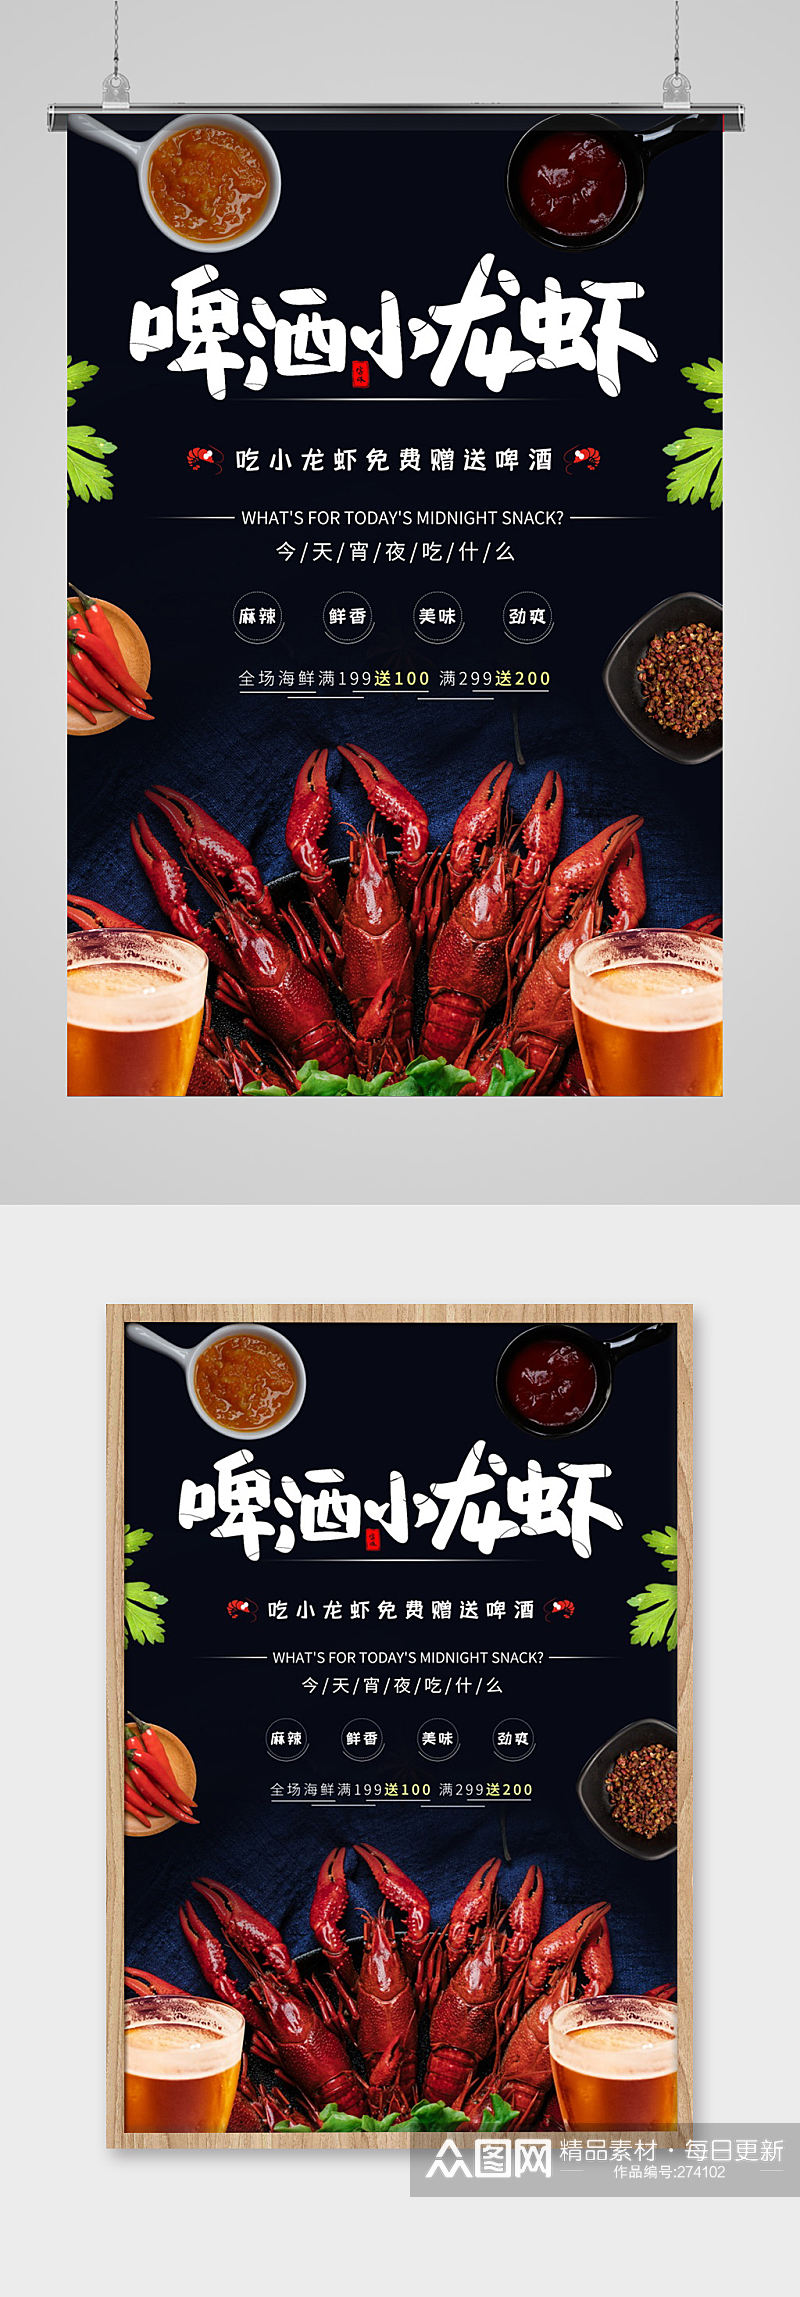 啤酒小龙虾美食海报素材